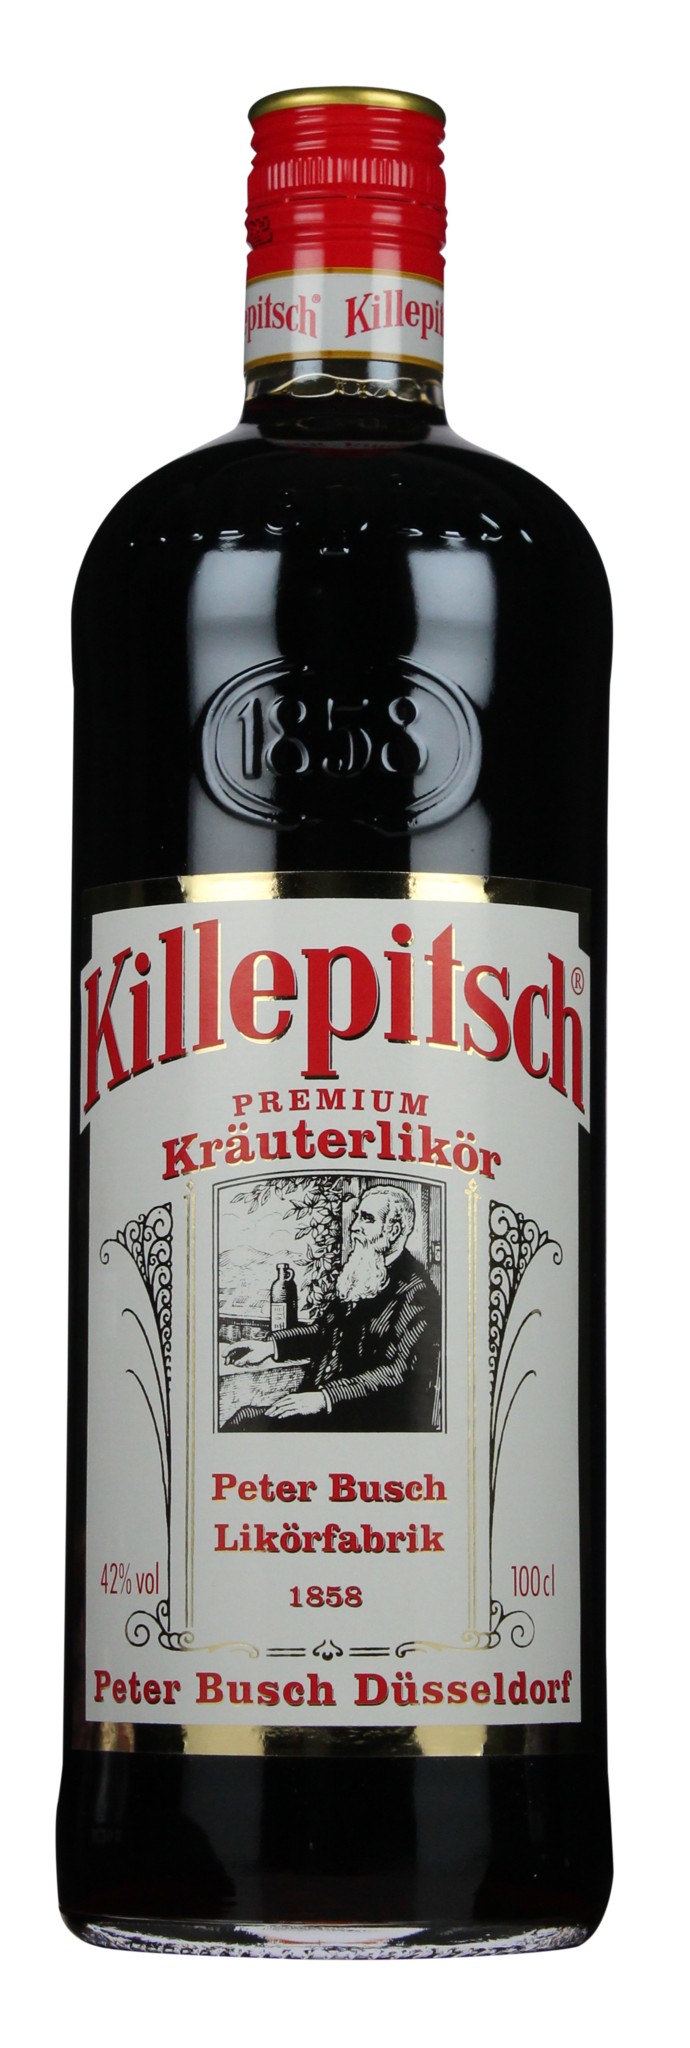 Fine - Killepitsch Whiskysite.nl Spirits 1,00 42% ltr World of